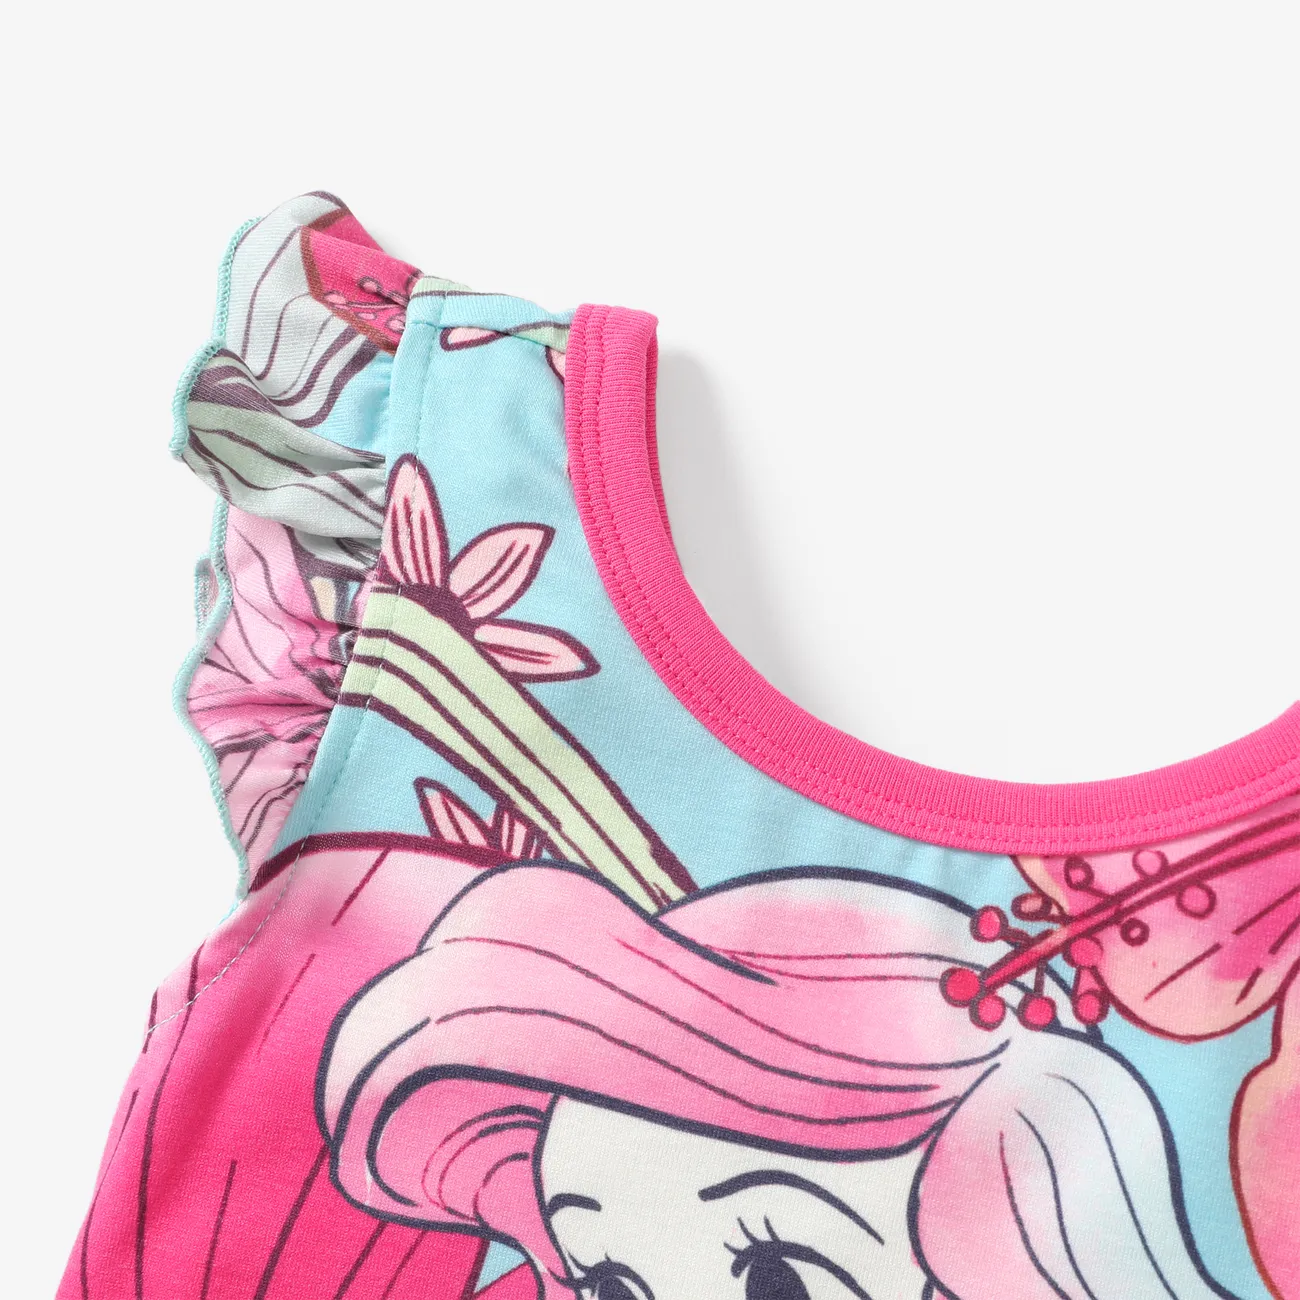  Disney Princess 2pcs Toddler Girls Naia™ Character Floral Print Ruffled Top with Shorts Set Pink big image 1